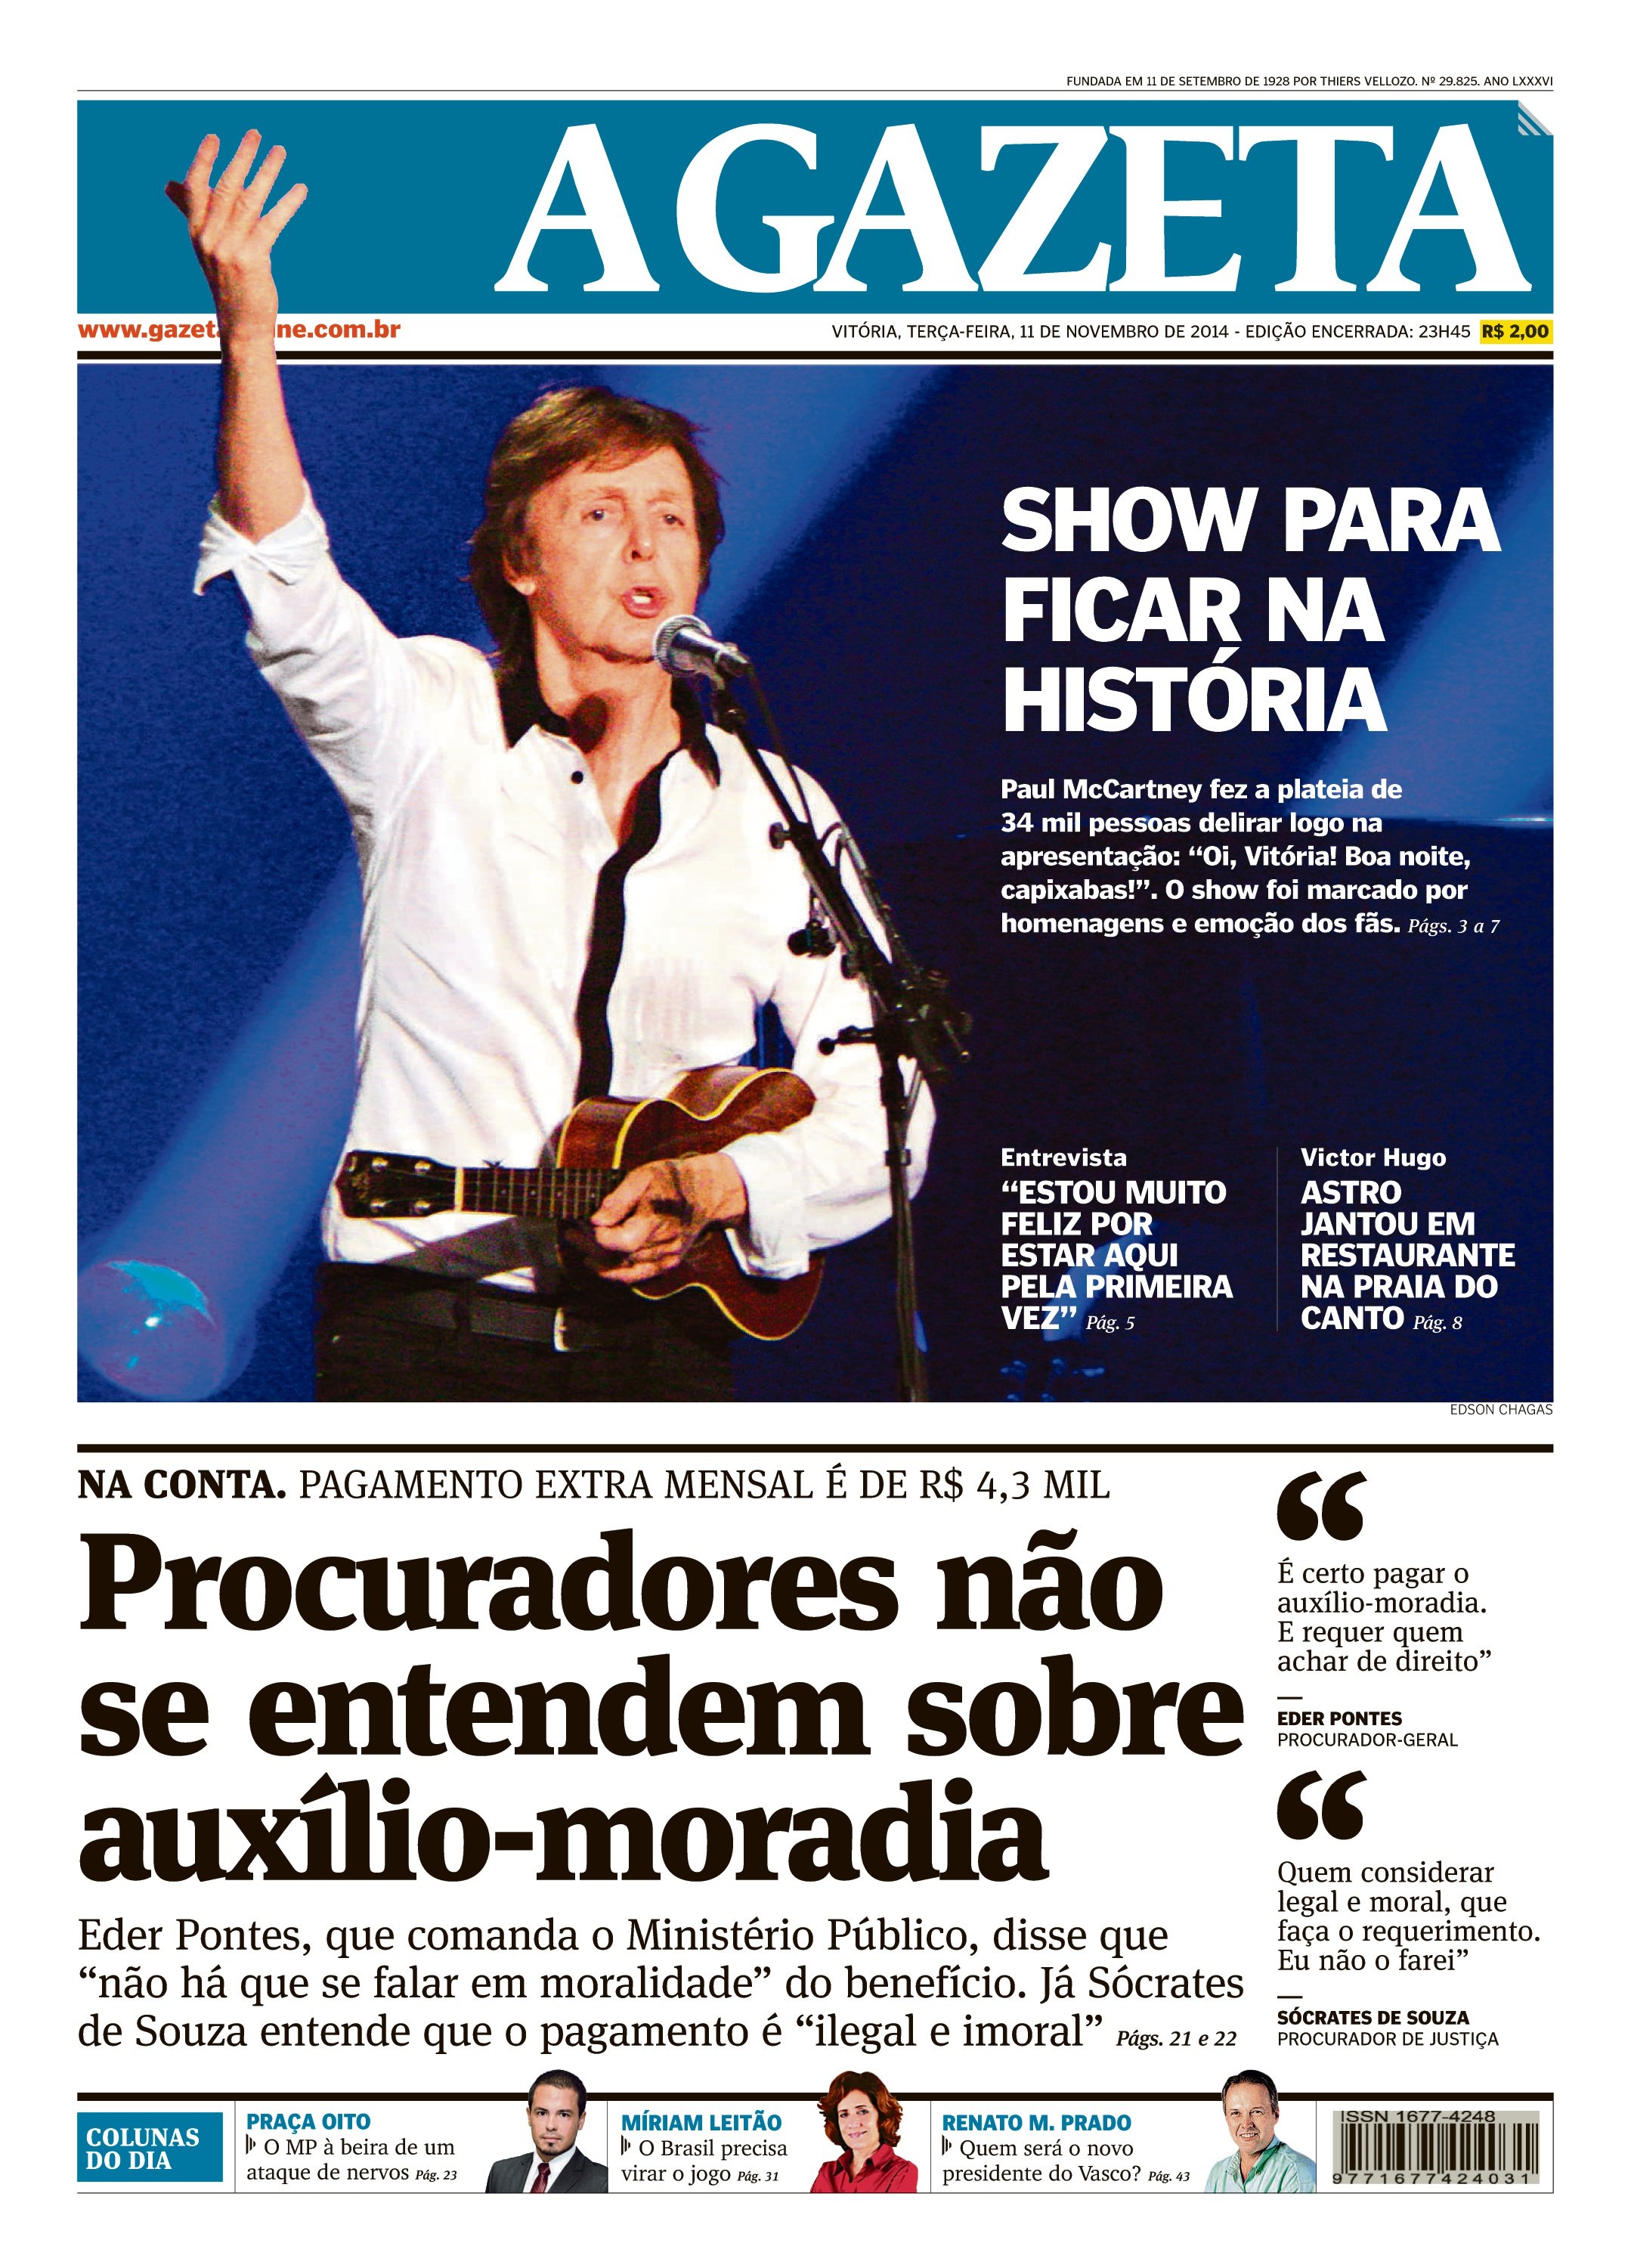 Show do Paul McCartney no ES